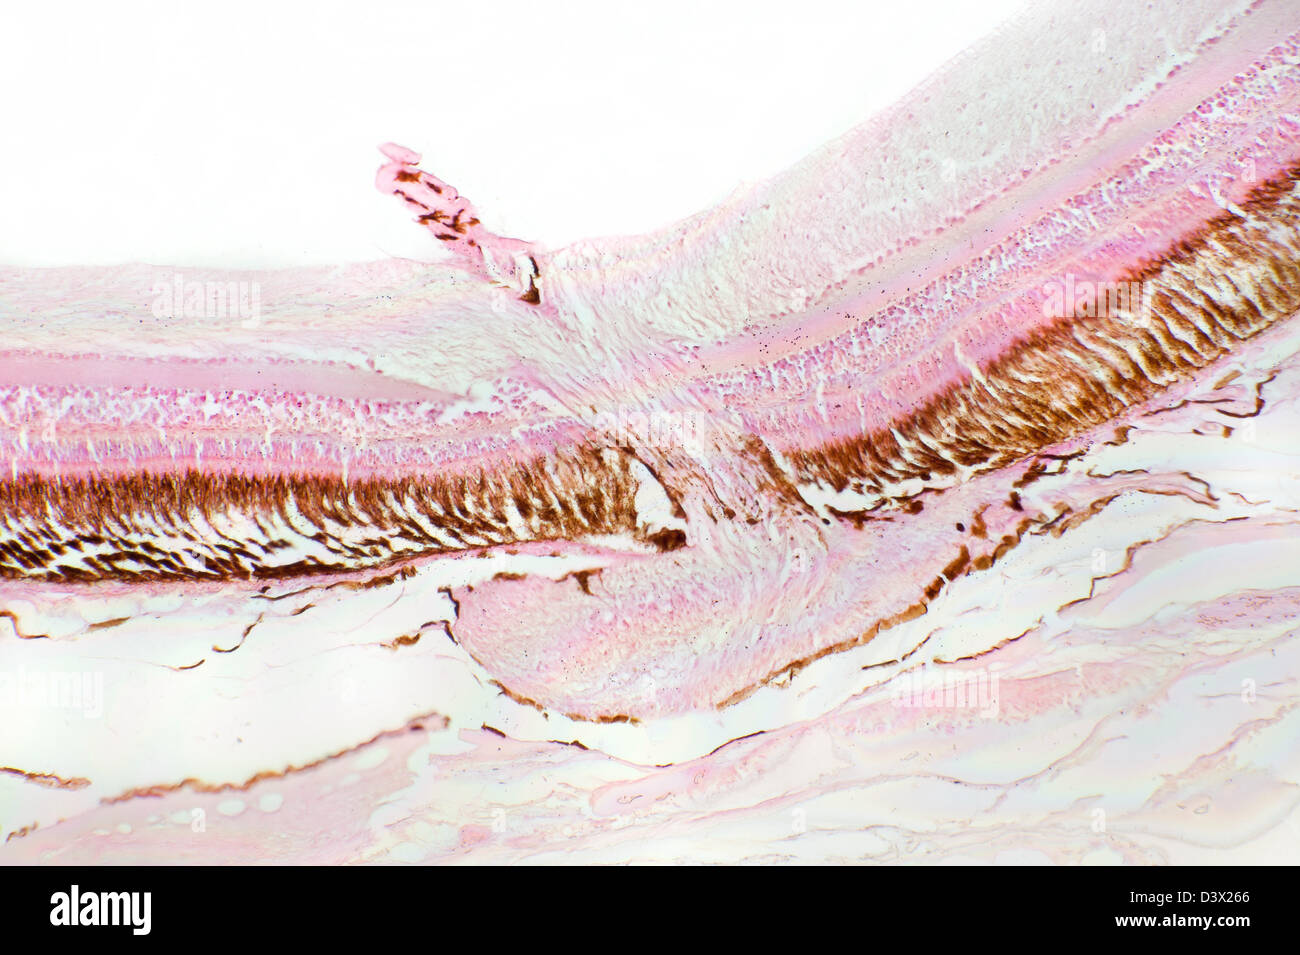 Microfotografía de campo brillante de la trucha arco iris, retina y nervio óptico, Salmo gardneri Foto de stock